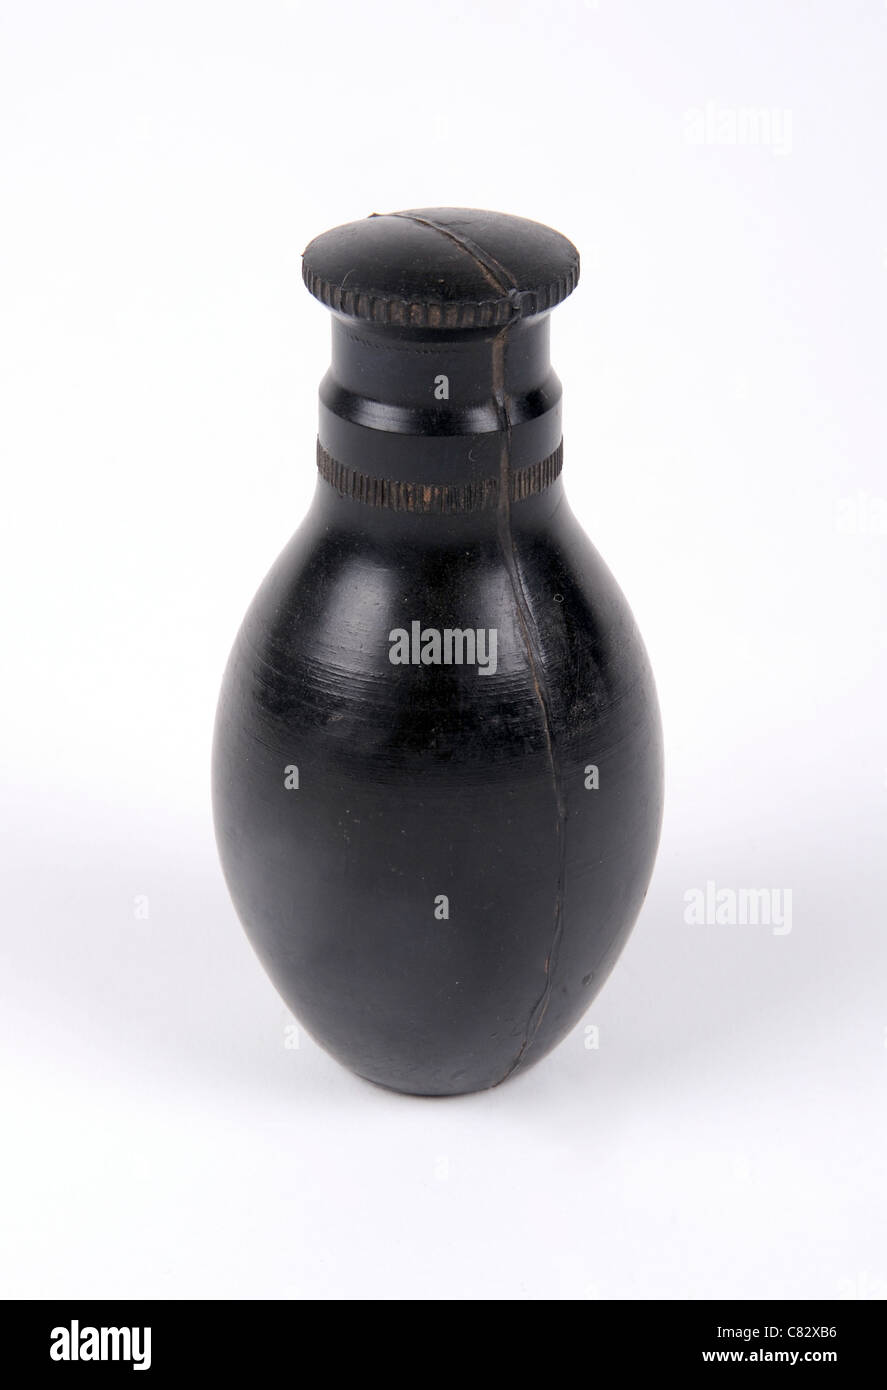 Formación de goma yugoslavo granada. Tiene el mismo peso que una granada sin el peligro de una carga explosiva, Foto de stock